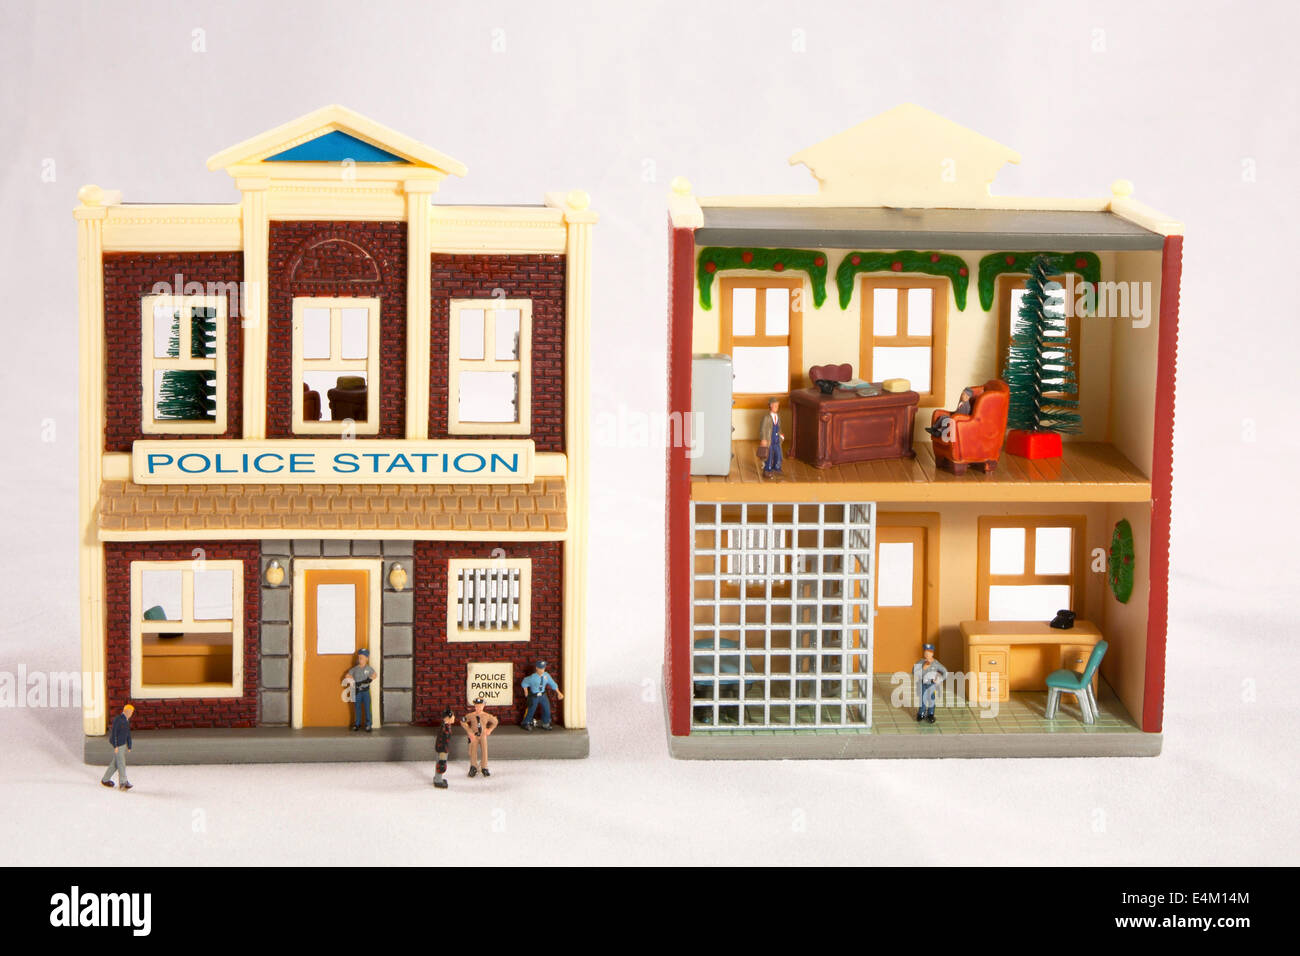 Innen- und Außenansichten der Polizeistation Modell mit Miniatur-Menschen. Stockfoto